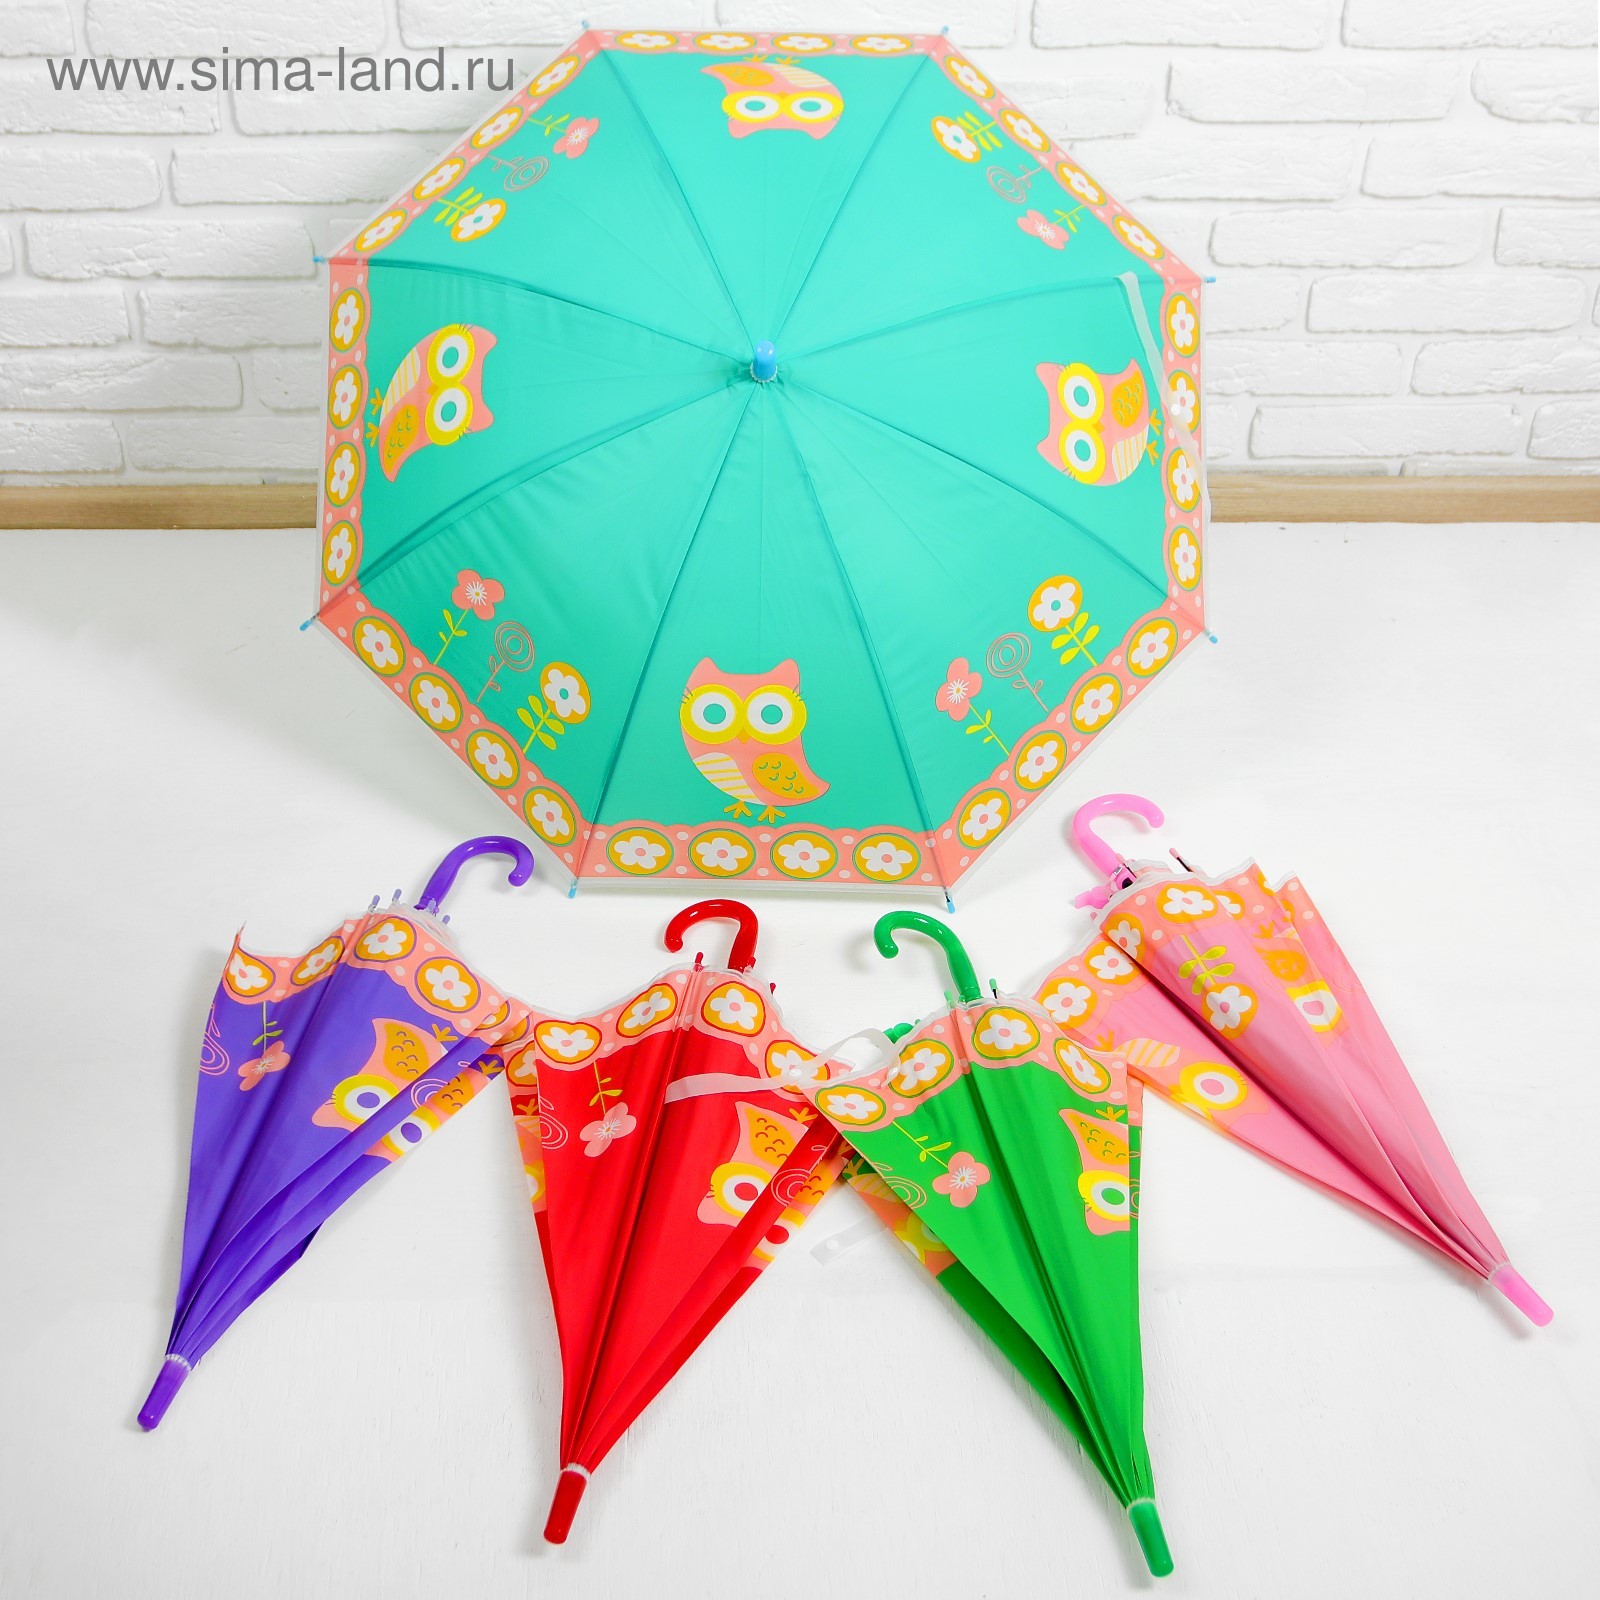 Игрушки зонтики. Зонт детский автомат микс d-4830. Детские зонты. Зонтик маленький детский. Малыш с зонтиком.